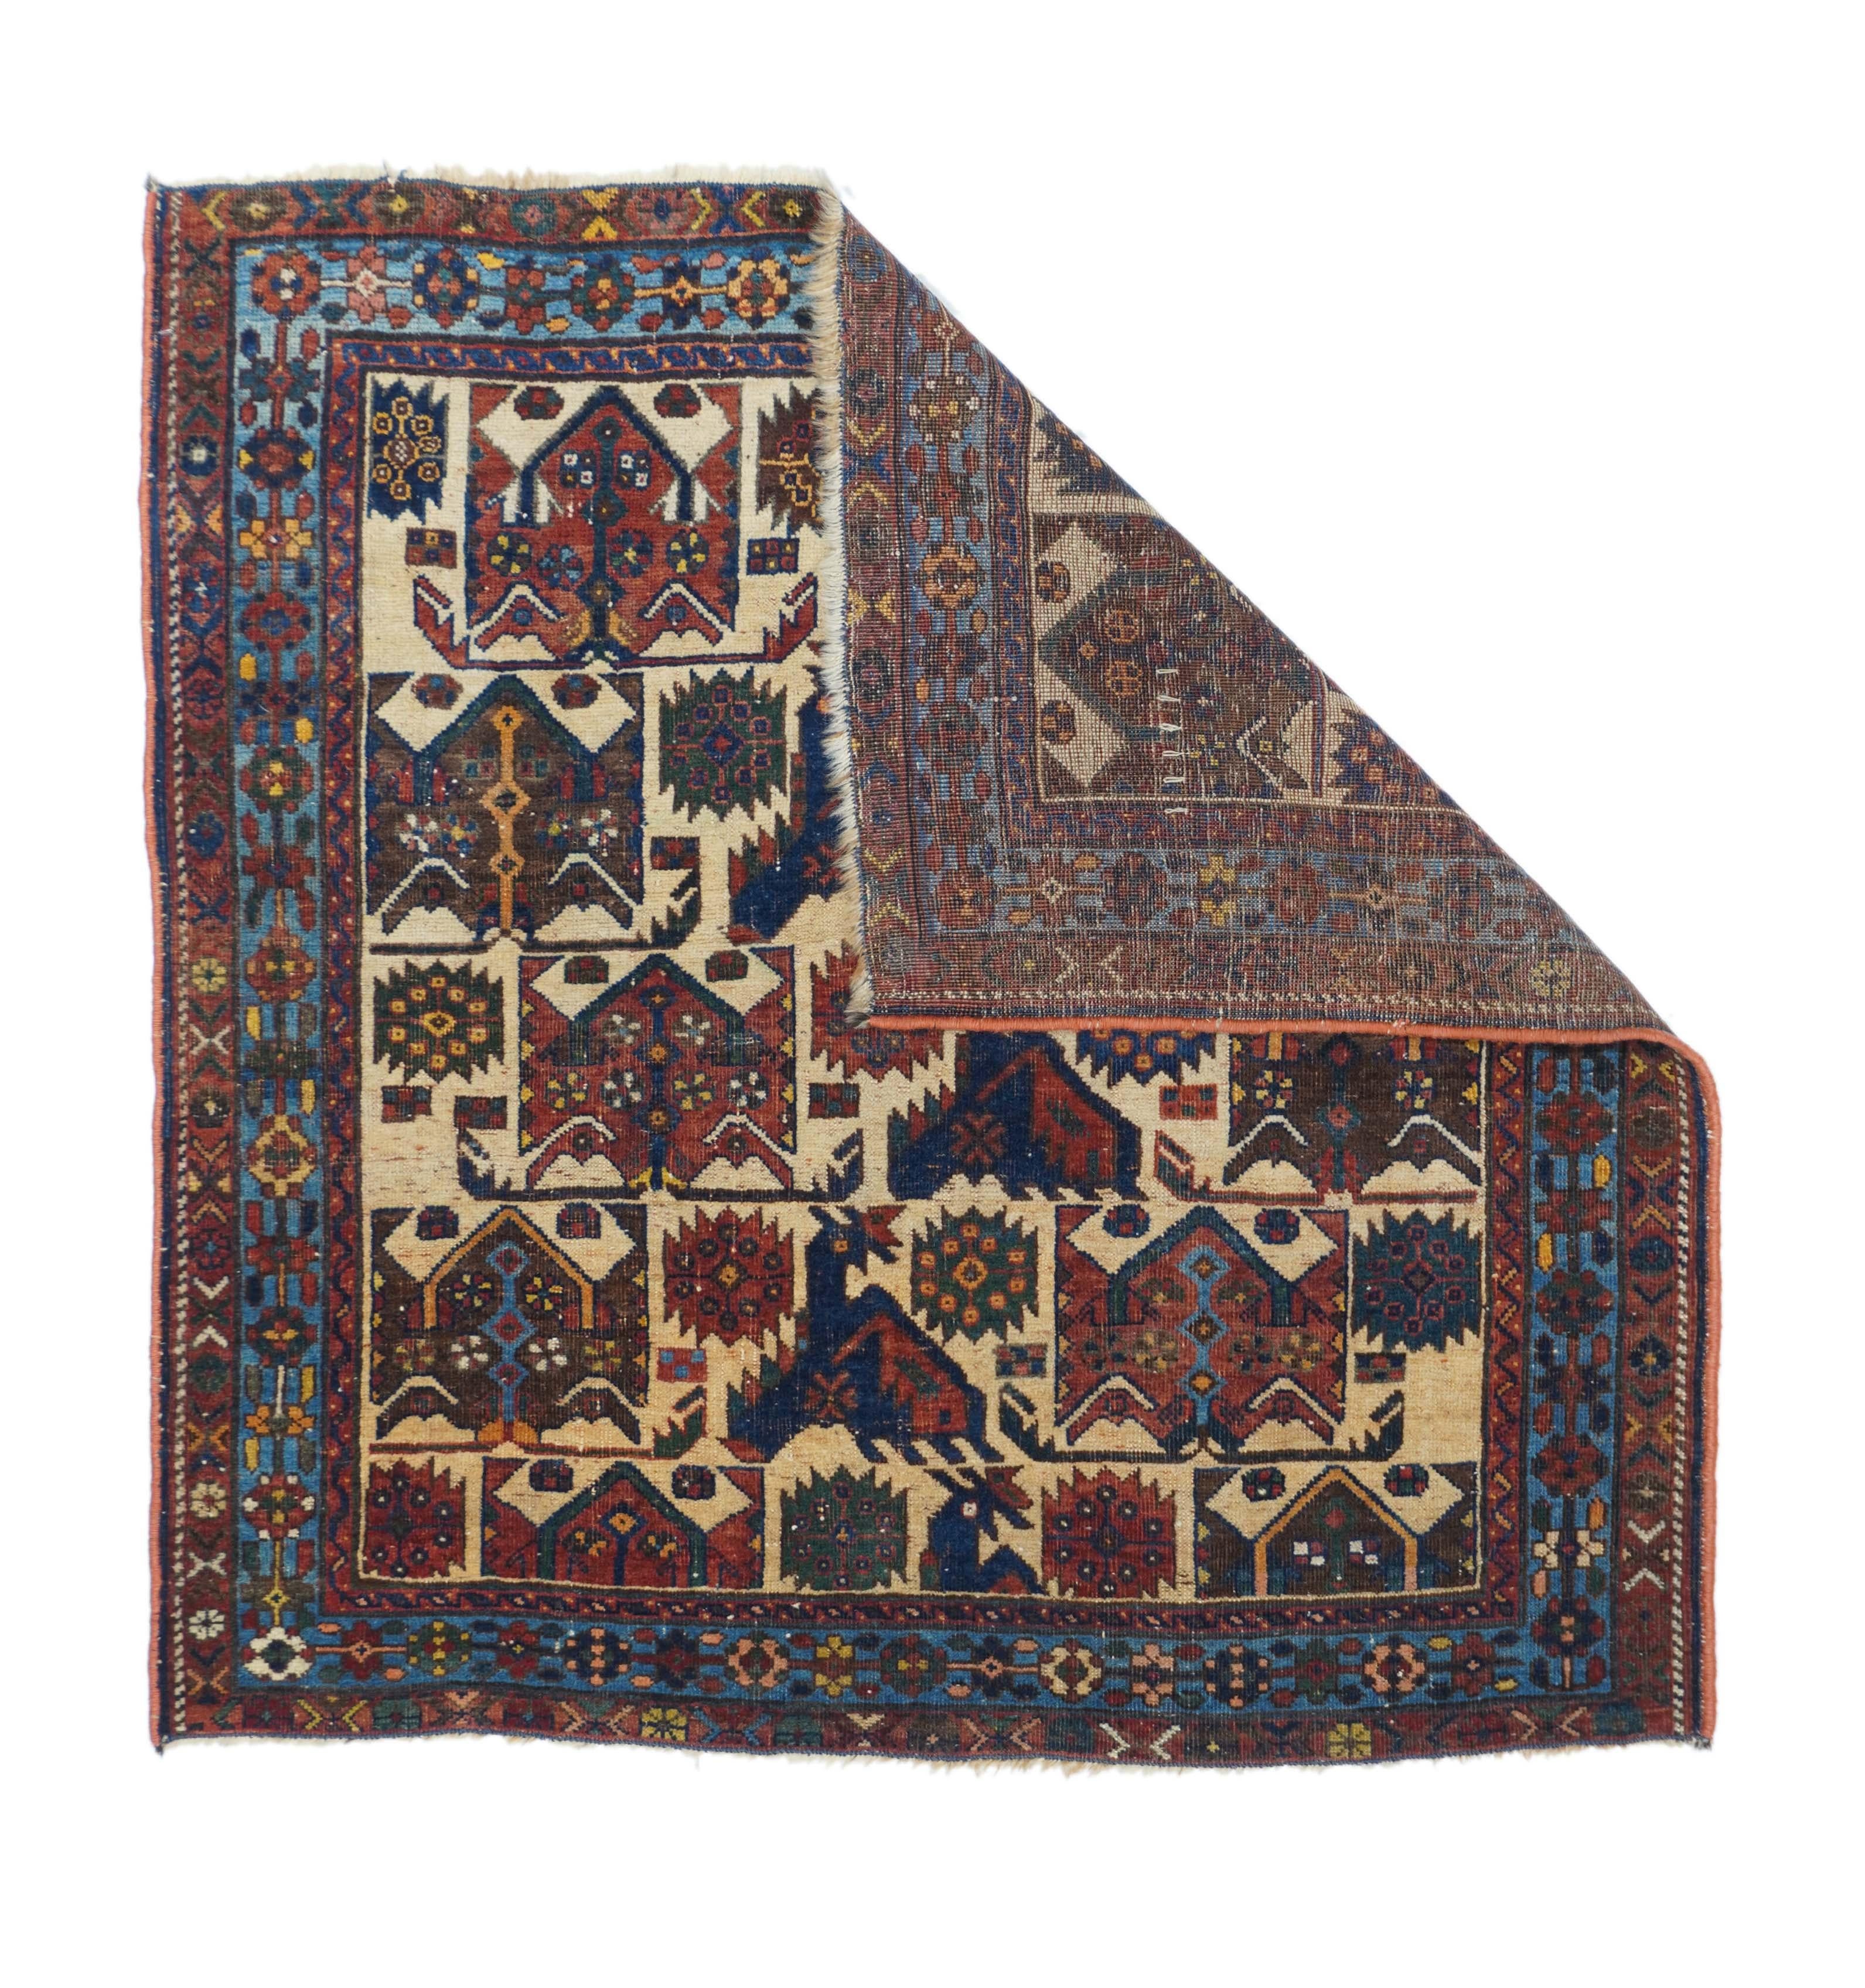 Afshar rug measures: 3'5'' x 3'7''.